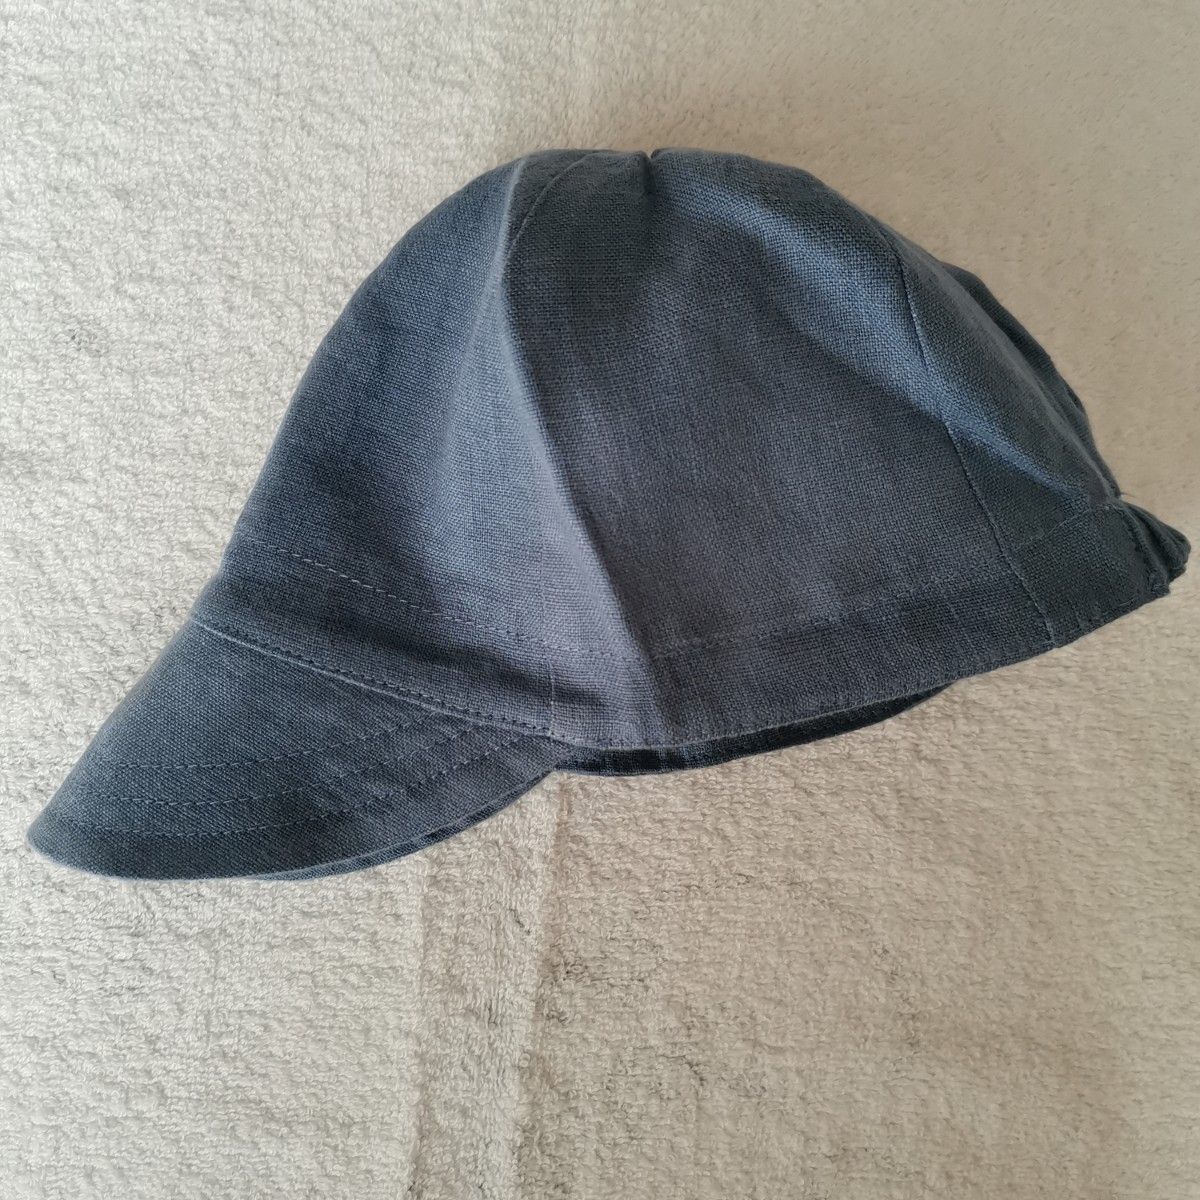 SM soor ploom Sun Cap hat 帽子 キャップ ブルー 水色